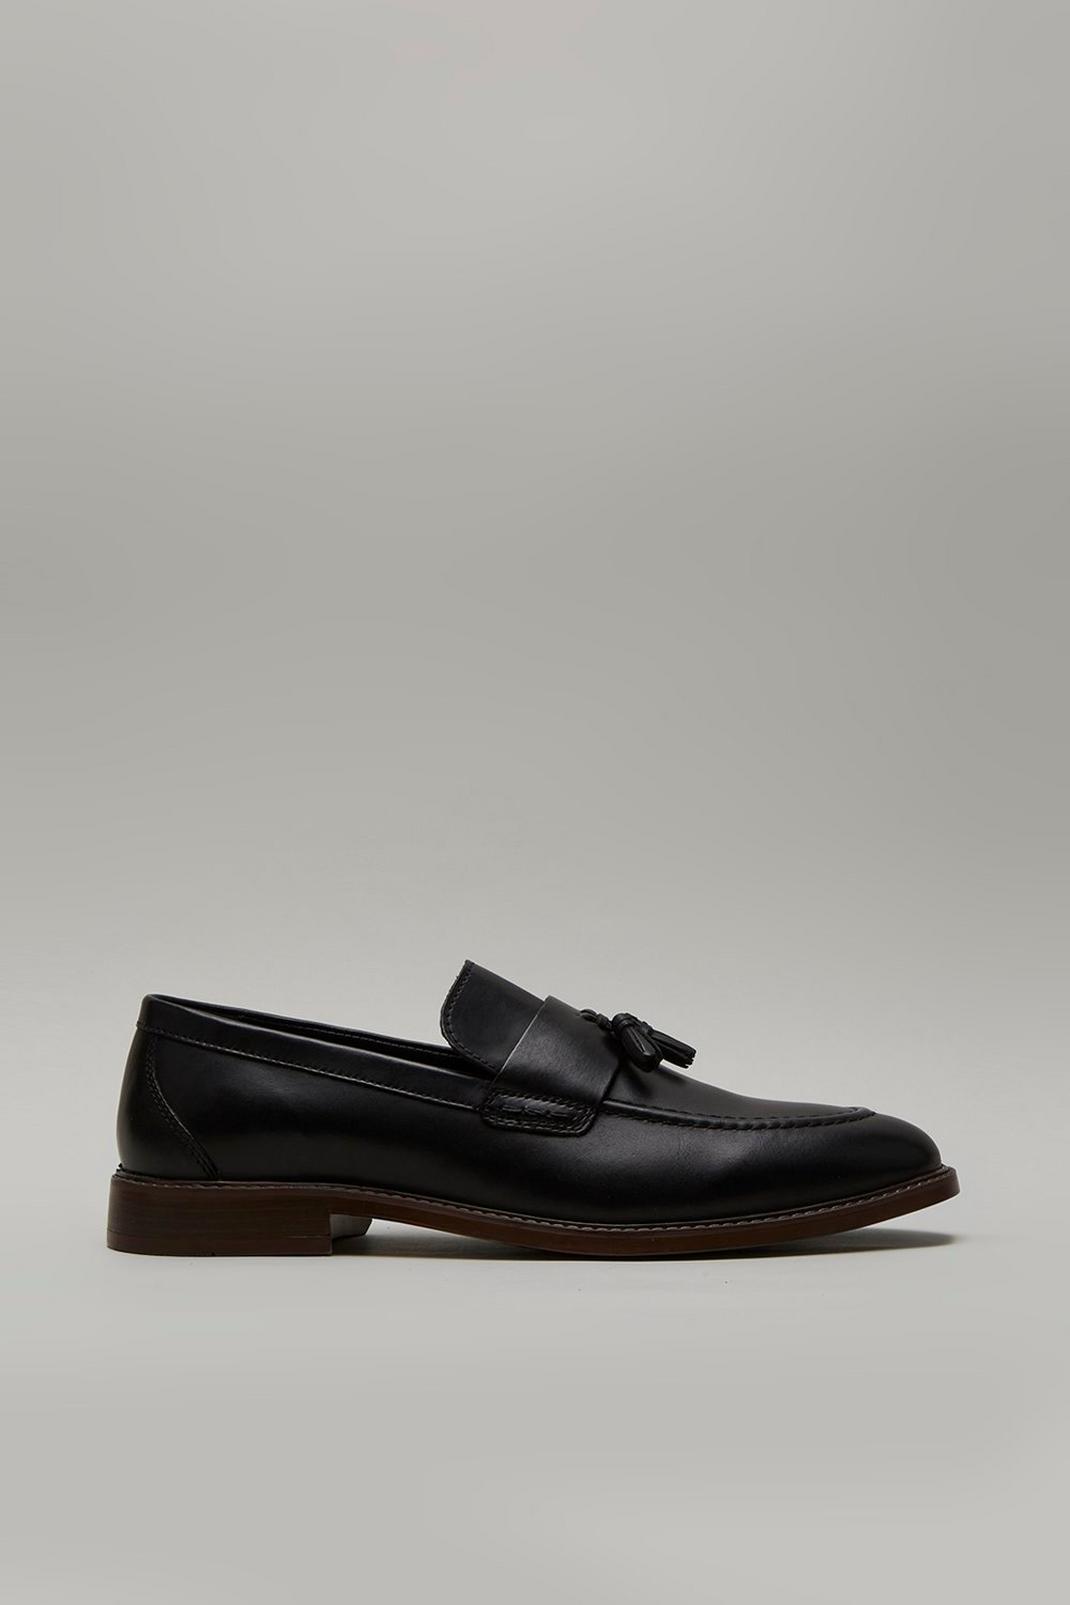 Black Smart Leather Slip On Loafers image number 1